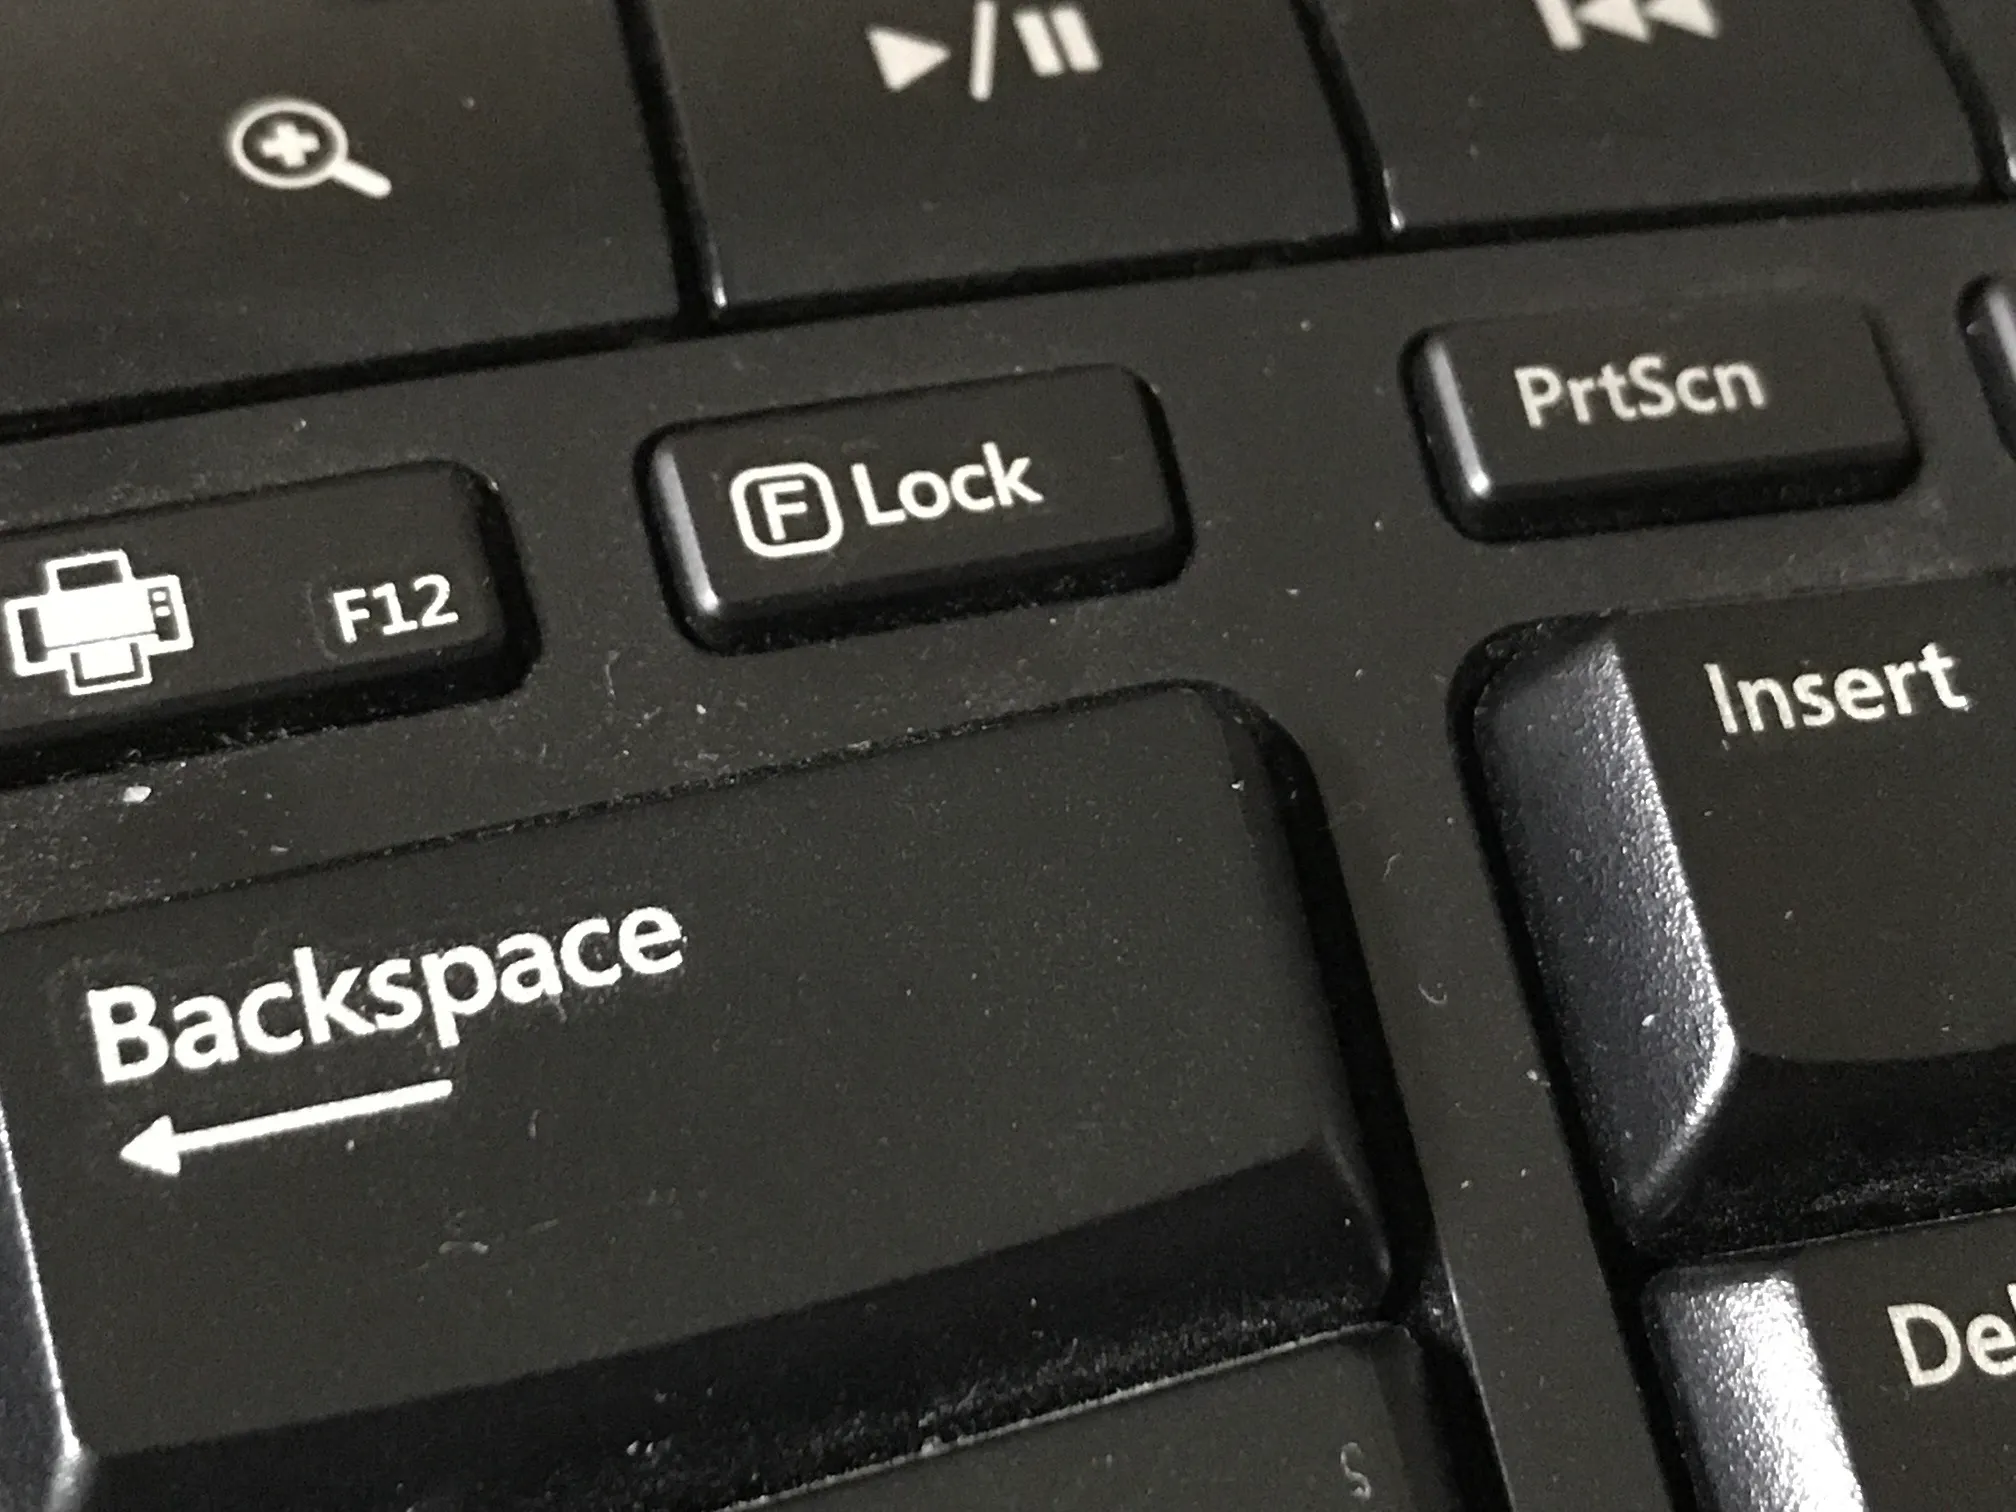 F Lock key on keyboard